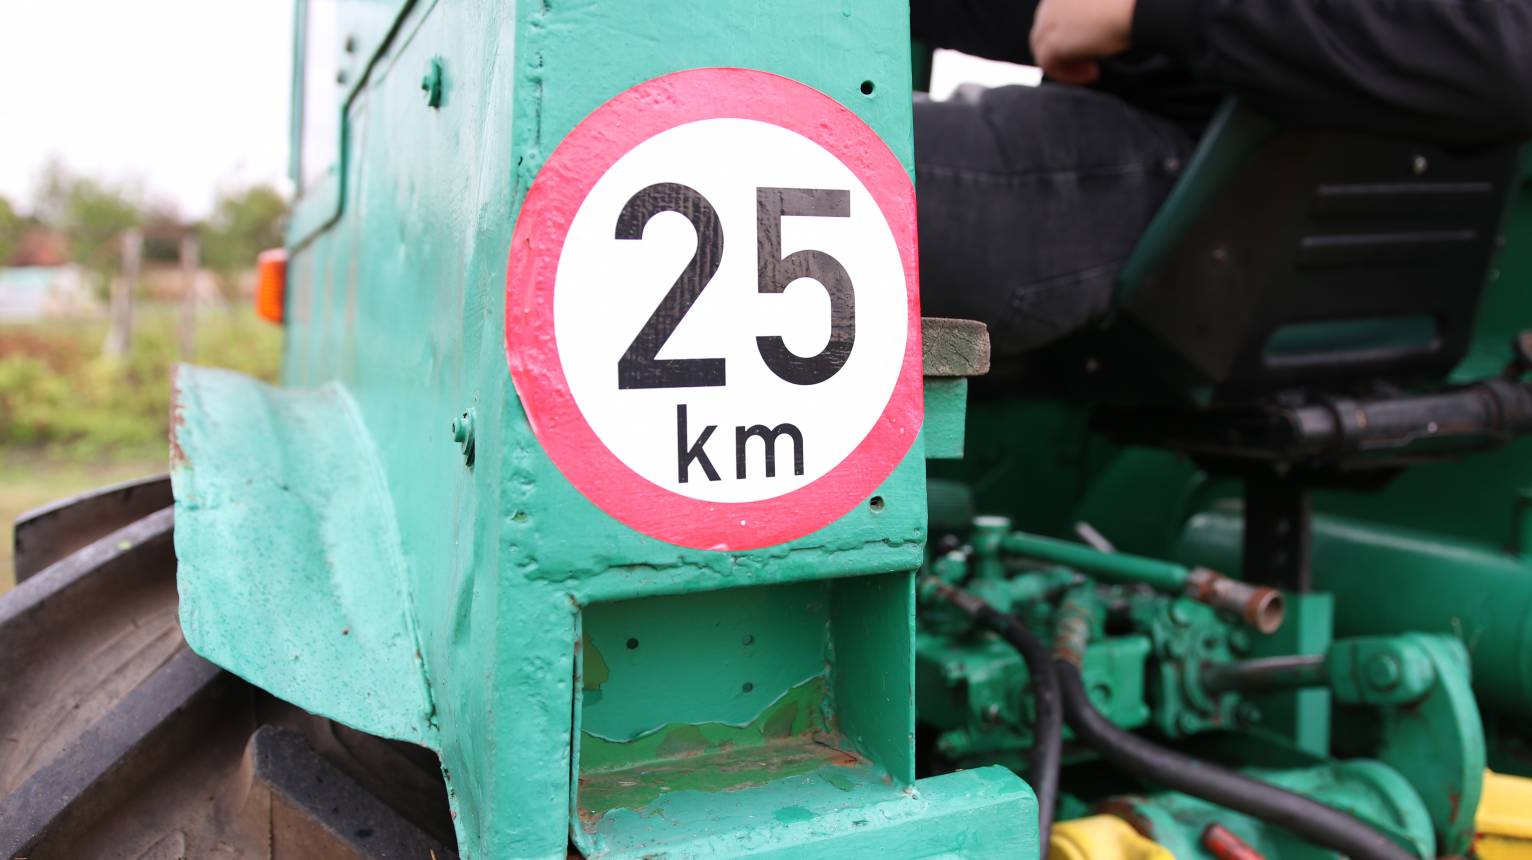 Dutra UE28-as  traktor vezetése gyerekeknek 5